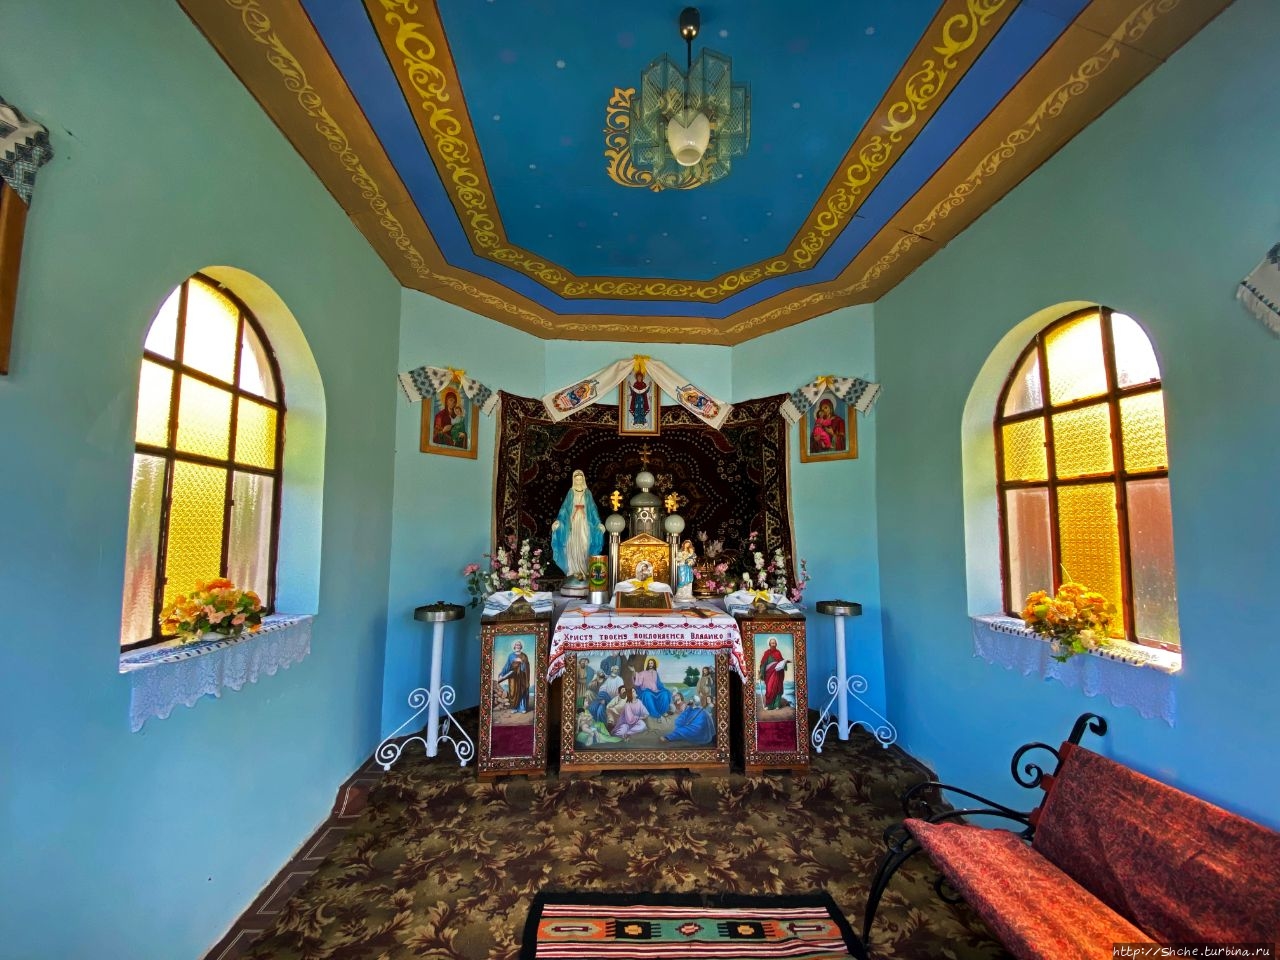 Церковь Покрова Пресвятой Богородицы Угринов, Украина